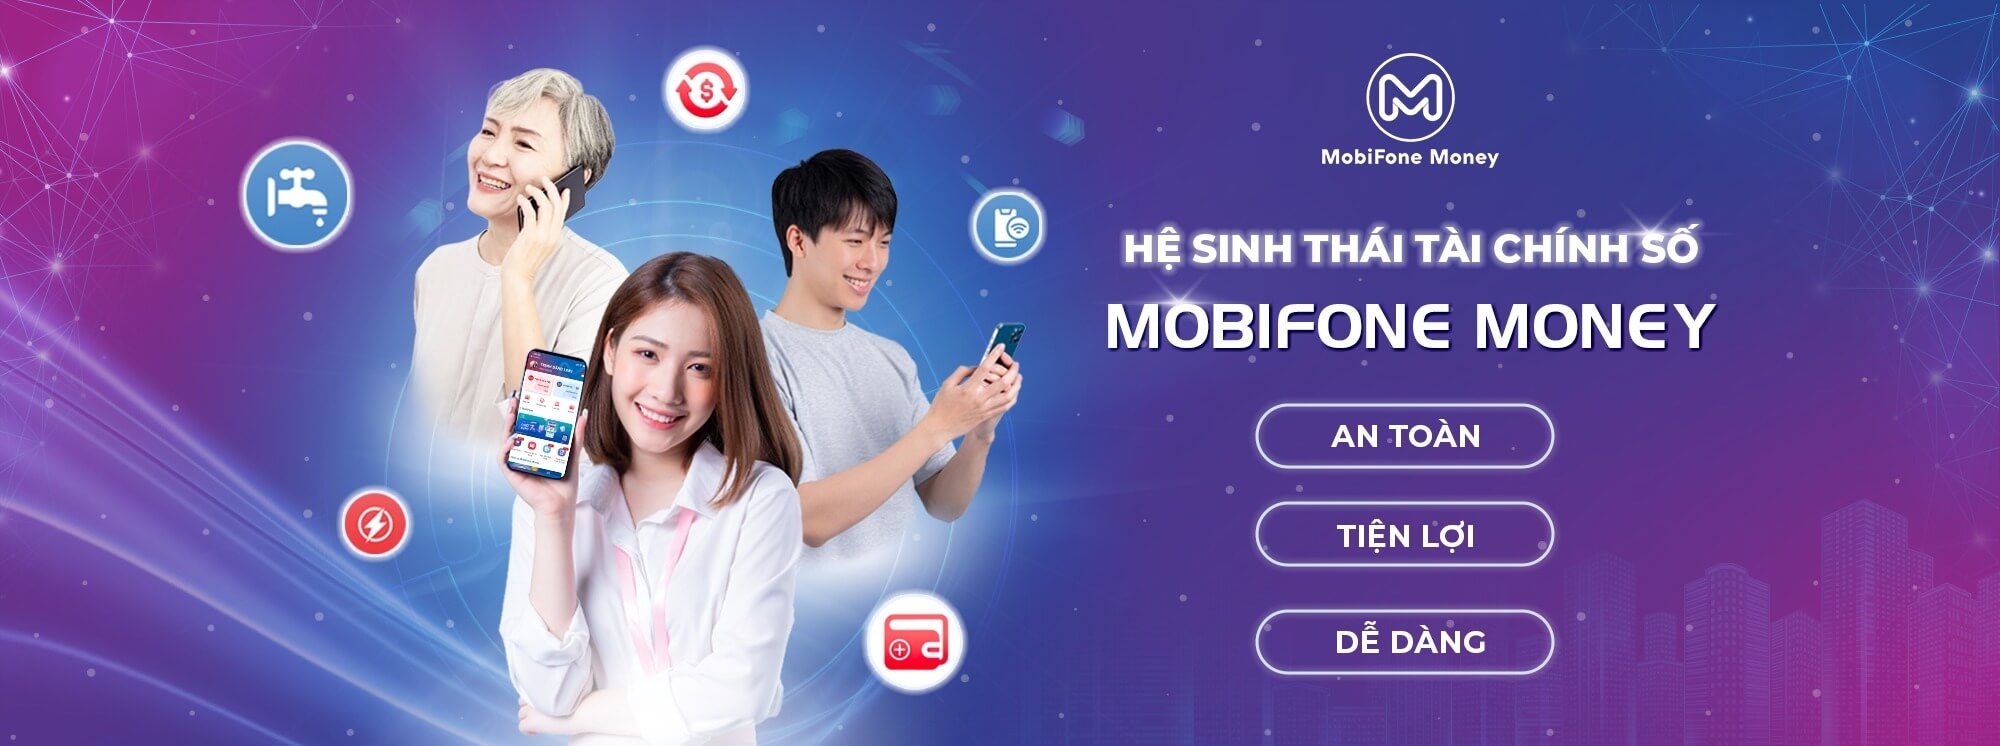 Ví Điện Tử MobiFone Pay Thanh Toán Nhanh, Đa Tiện Ích